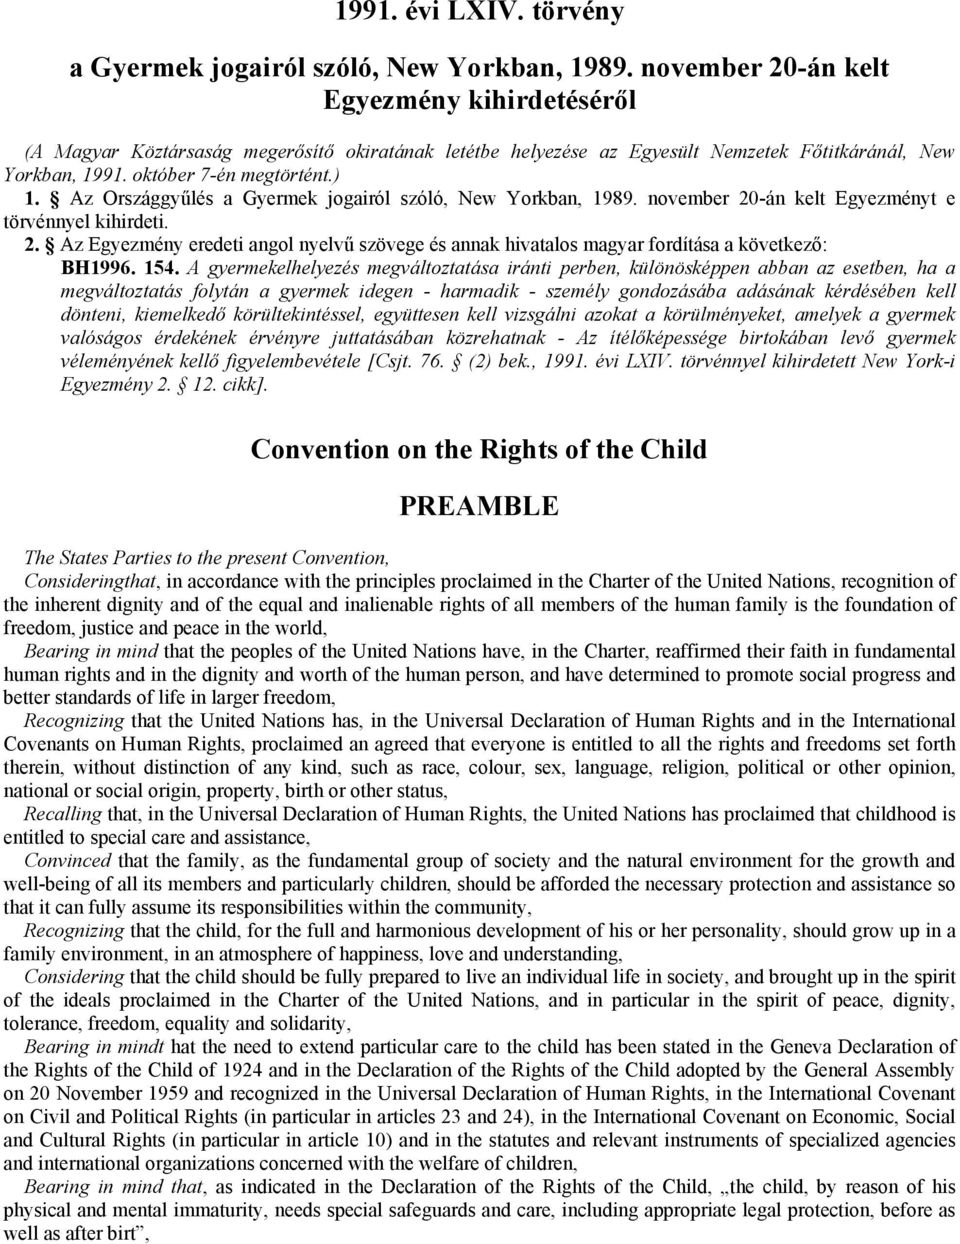 Az Országgyűlés a Gyermek jogairól szóló, New Yorkban, 1989. november 20-án kelt Egyezményt e törvénnyel kihirdeti. 2. Az Egyezmény eredeti angol nyelvű szövege és annak hivatalos magyar fordítása a következő: BH1996.